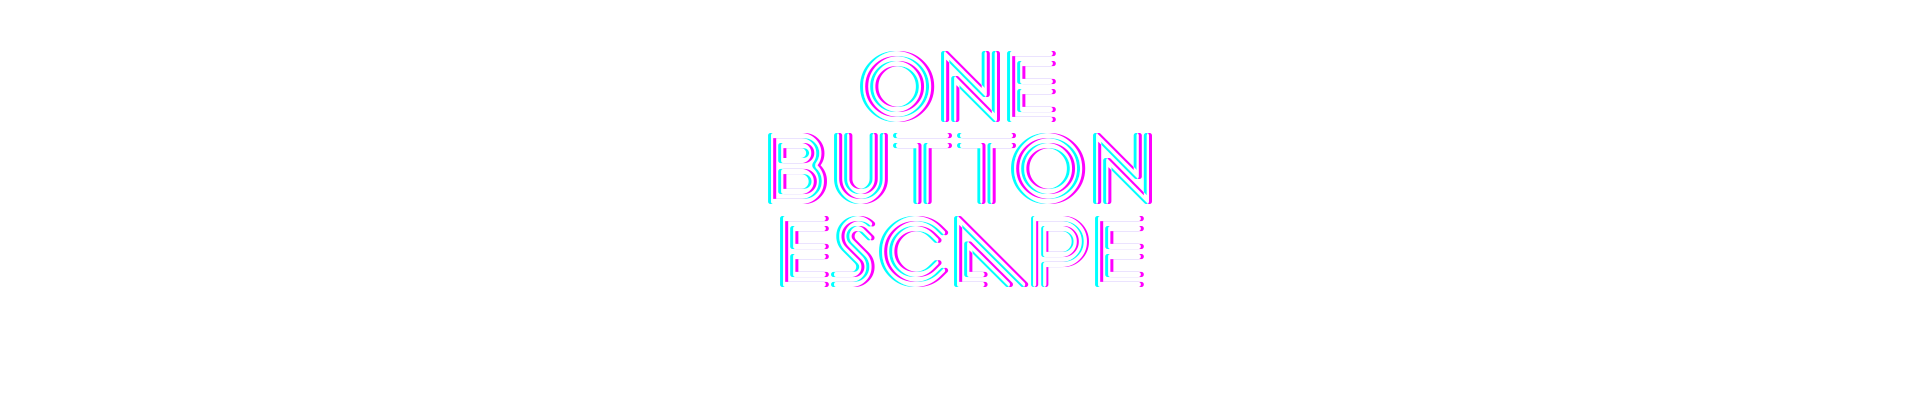 One Button Escape